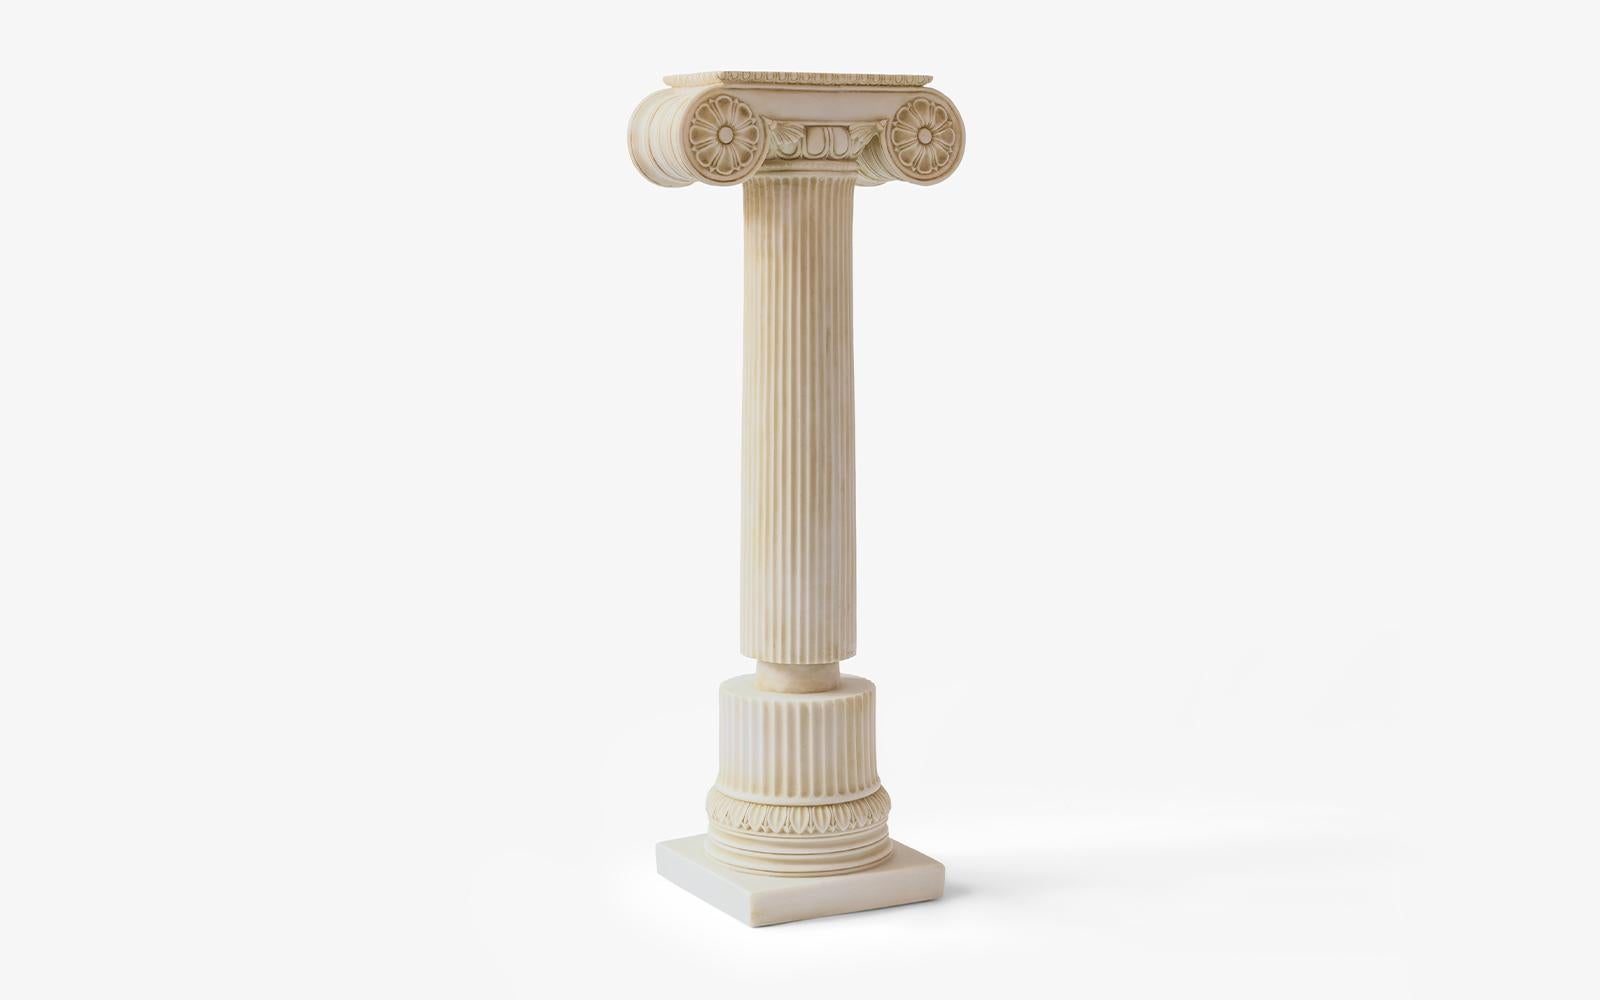 Gewicht: 7,5 kg
Die ionischen Säulen, die an der West- und Südküste Anatoliens entstanden, haben eine schlanke, lange und elegante Form.

Die besondere Auswahl von Lagu bringt die wichtigsten Skulpturen der Weltgeschichte mit den besten MATERIALEN